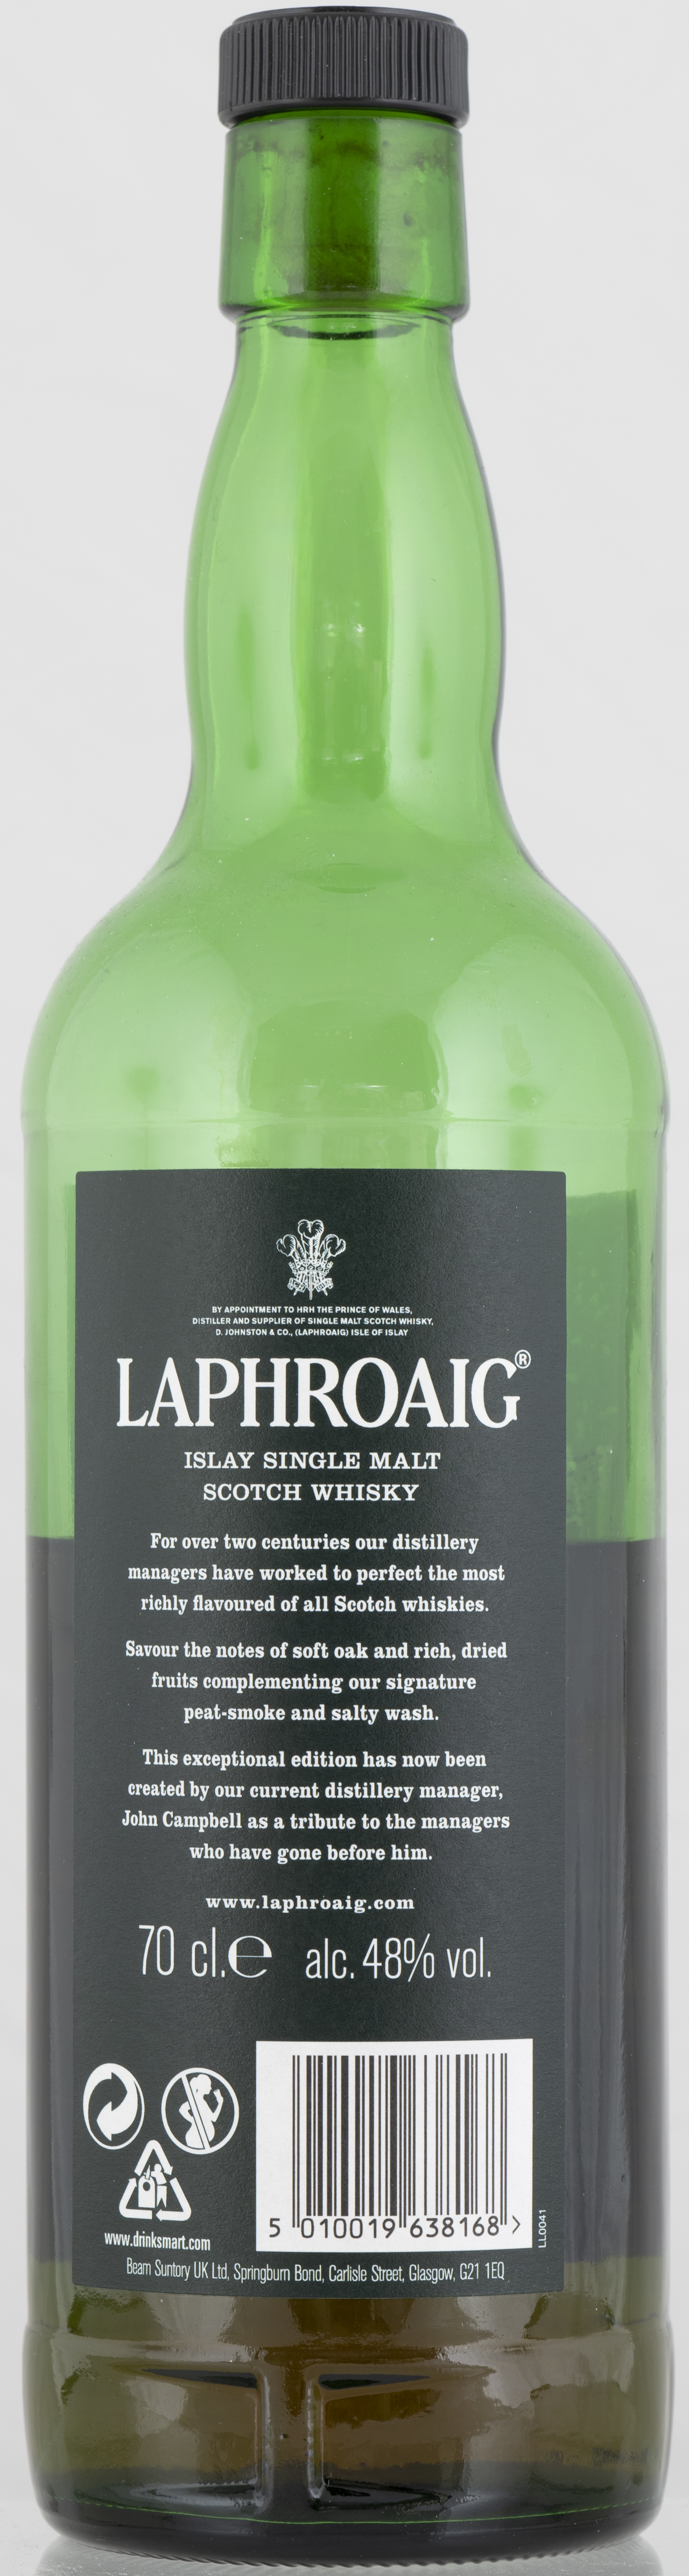 Billede: PHC_7241 - Laphroaig 1815 Legacy - bottle back.jpg